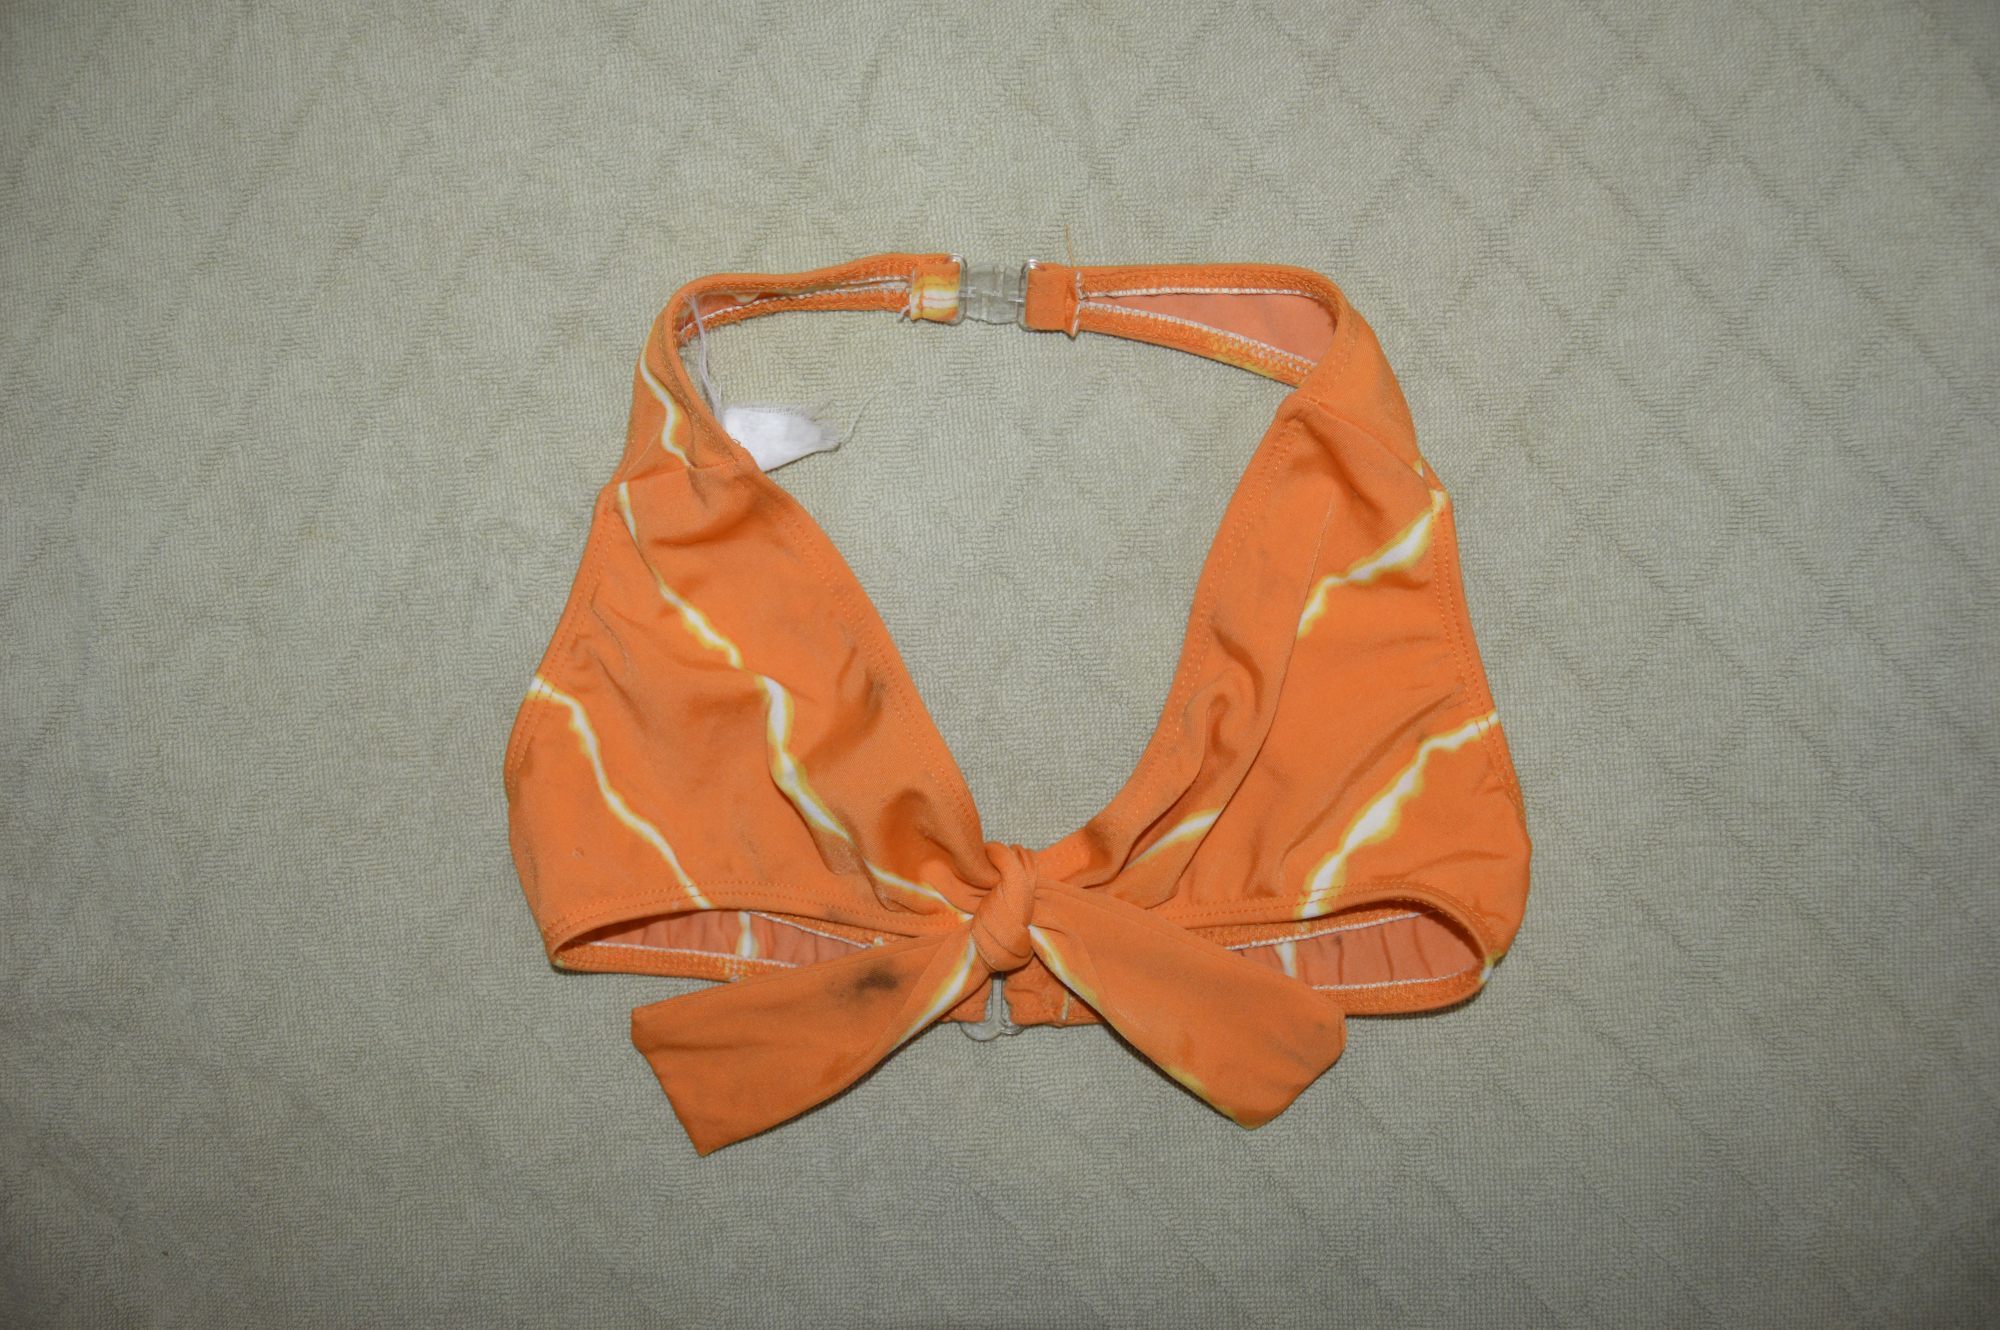 sosten bañador color naranja  muy bonito y sexy  con broches pla